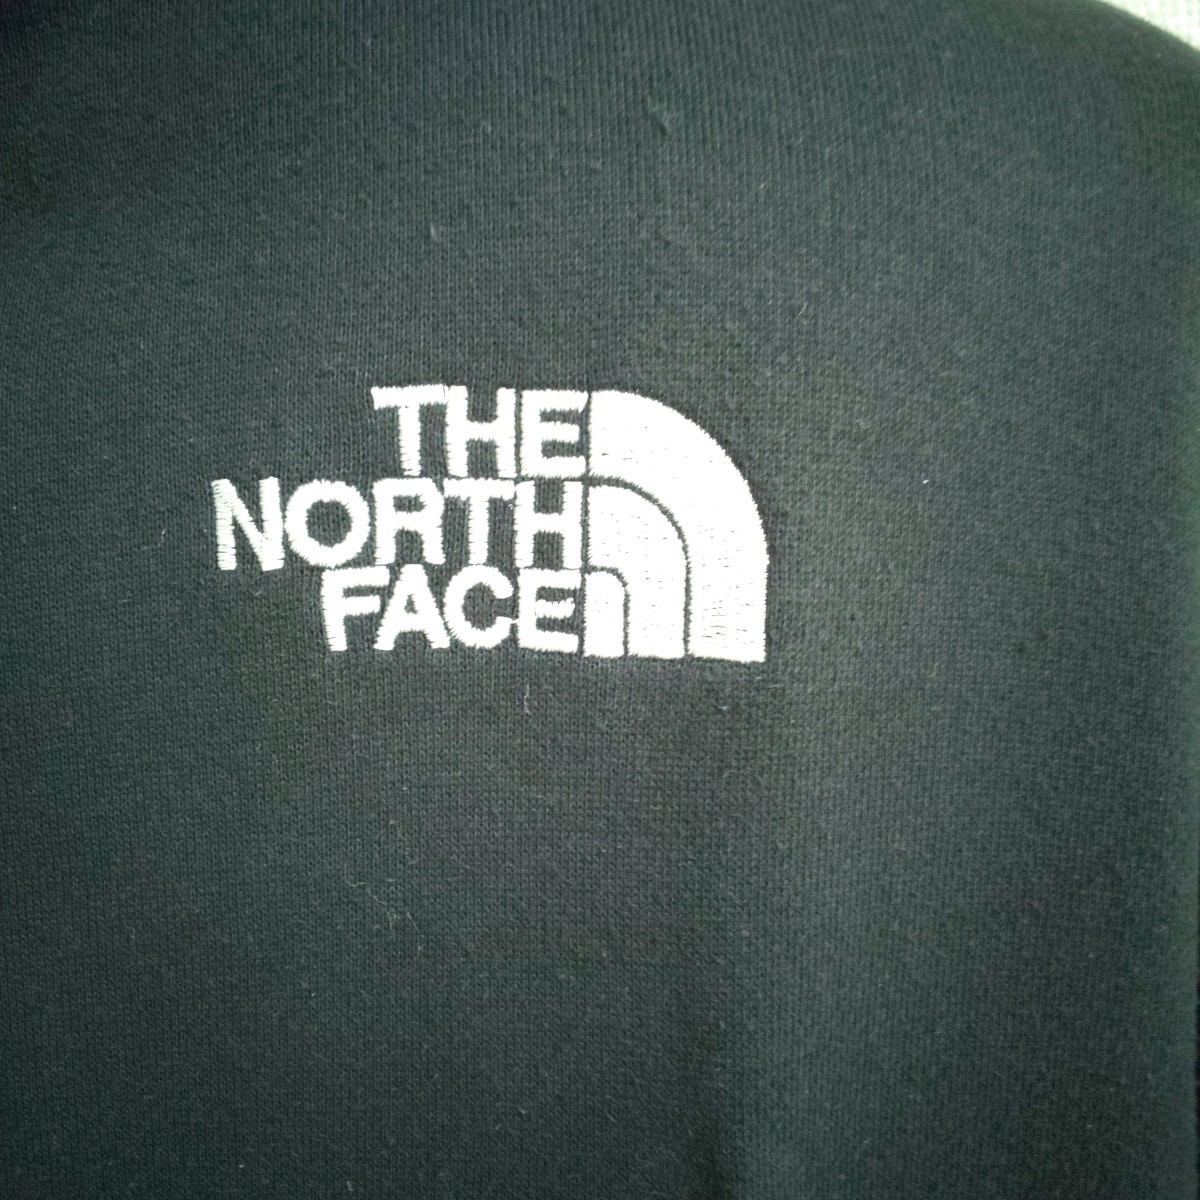 THE NORTH FACE リアビュー ジップパーカー フルジップ ザノースフェイス フーディー 刺繍デカロゴ